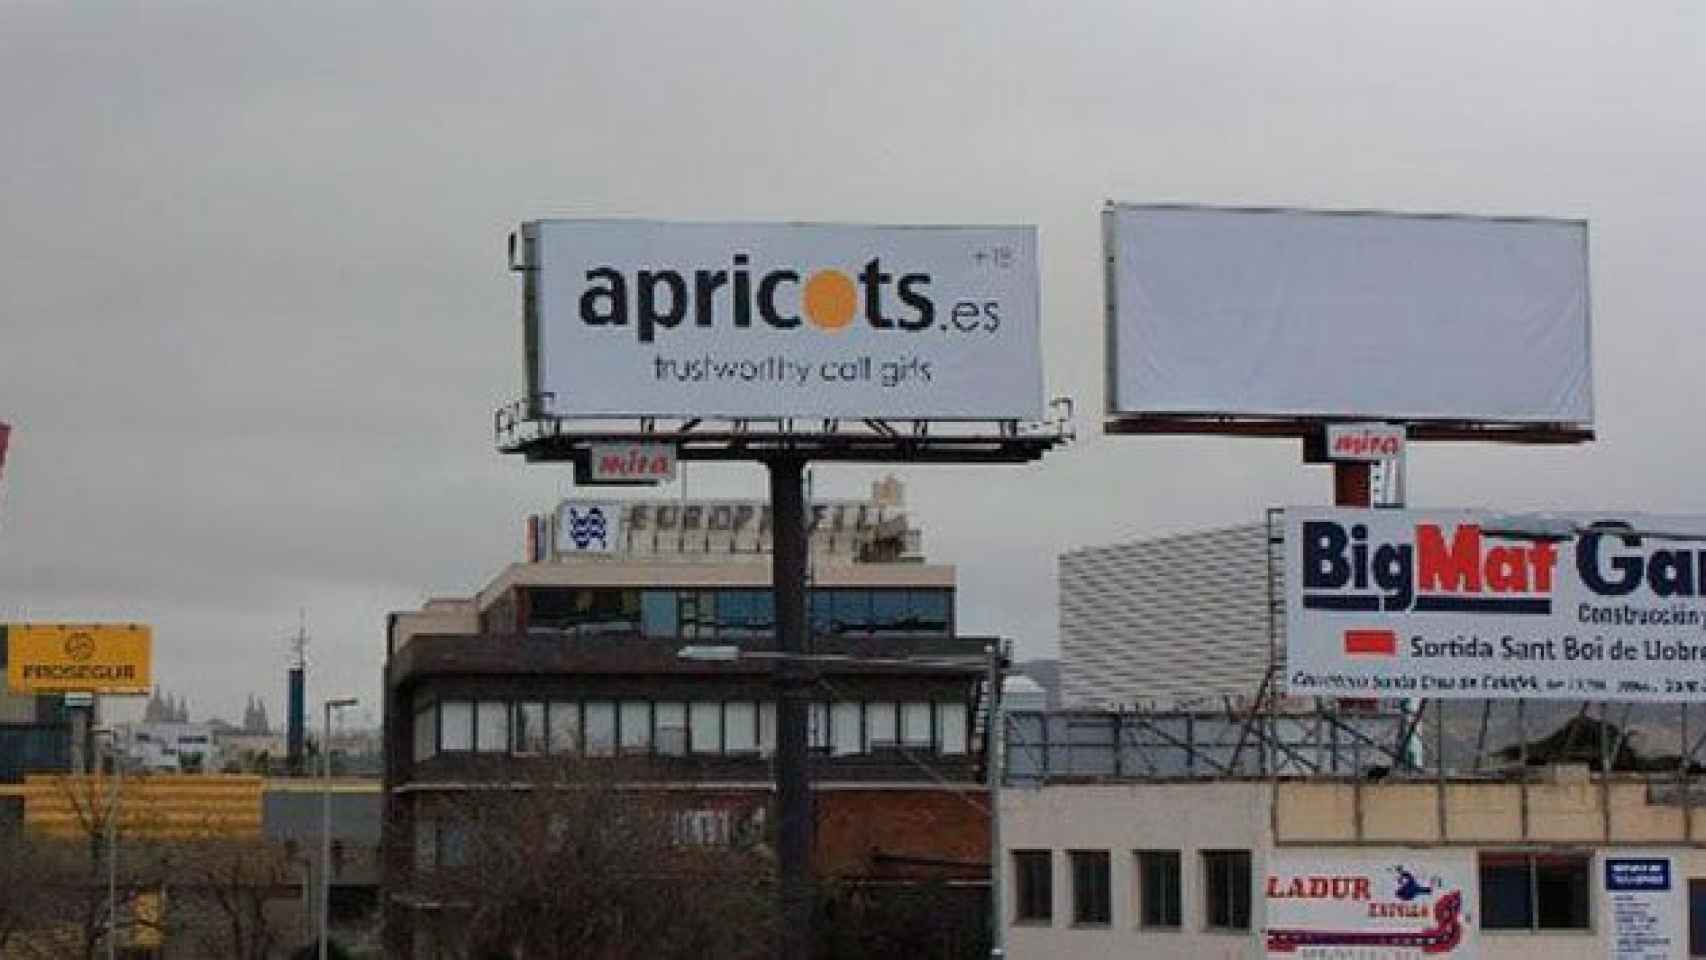 La valla publicitaria en la entrada de Barcelona de Apricots, la empresa de prostitución ética / CG